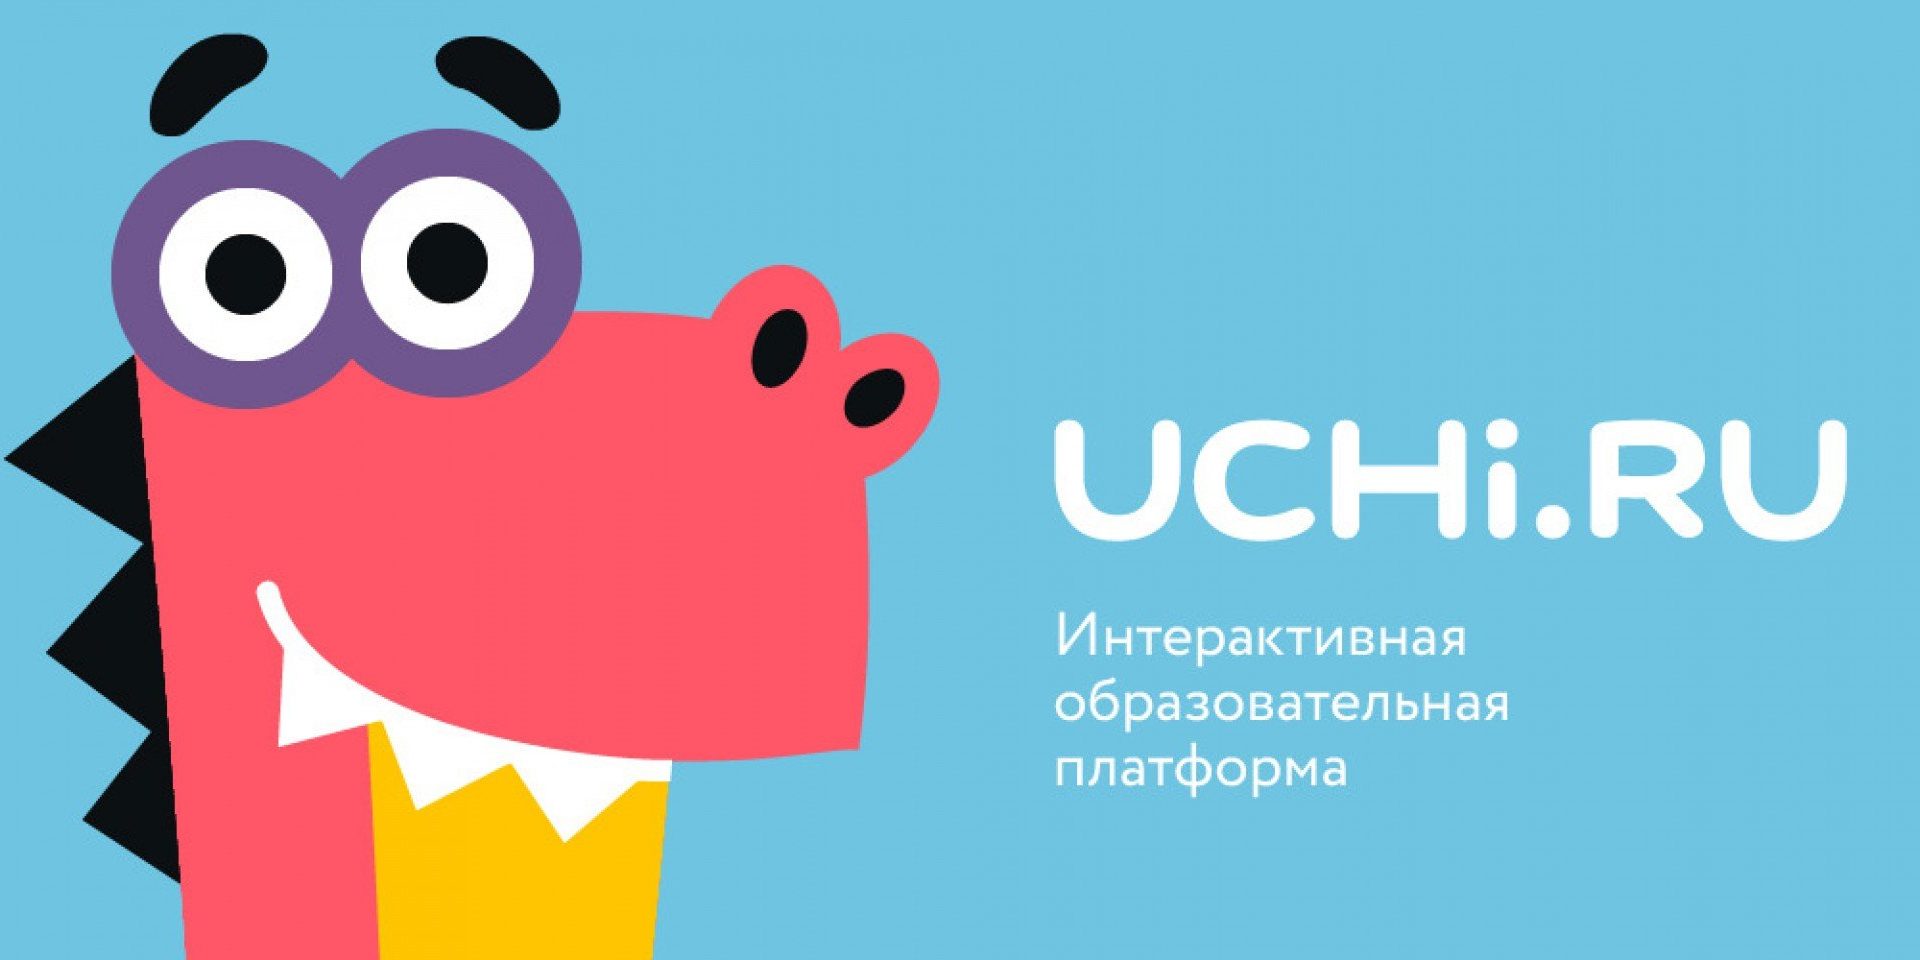 Образовательная платформа Учи.ру проводит всероссийскую олимпиаду по математике для учеников 1-9-х классов ..